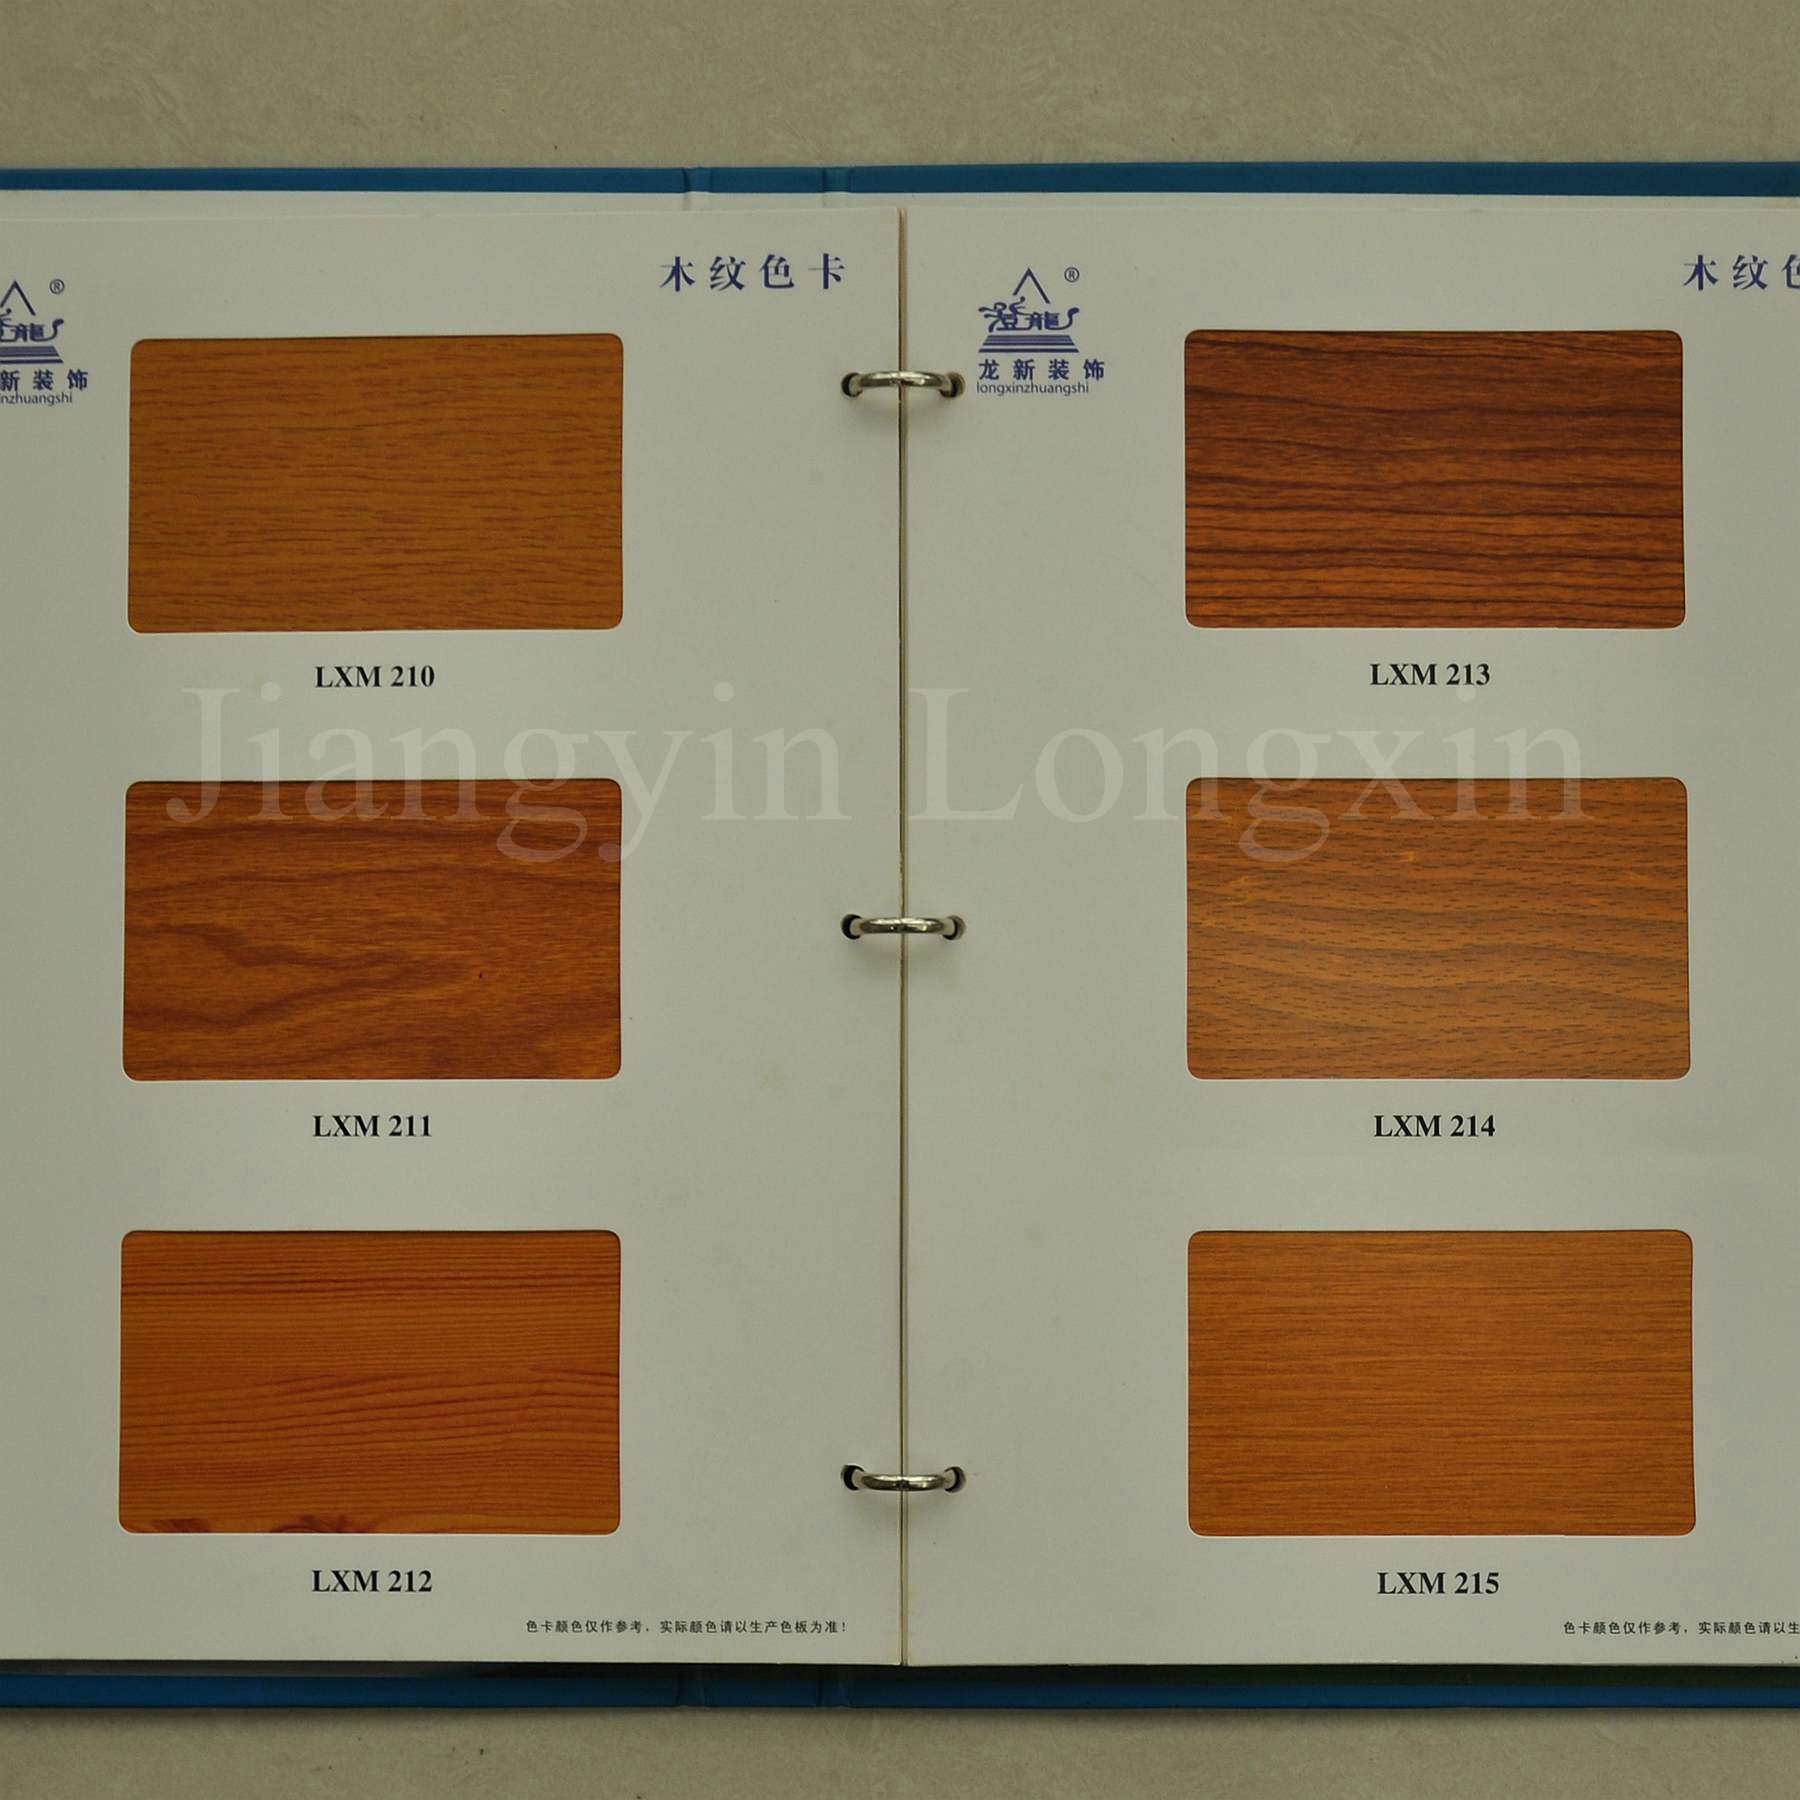 Wooden Print Aluminium Profile for Windows